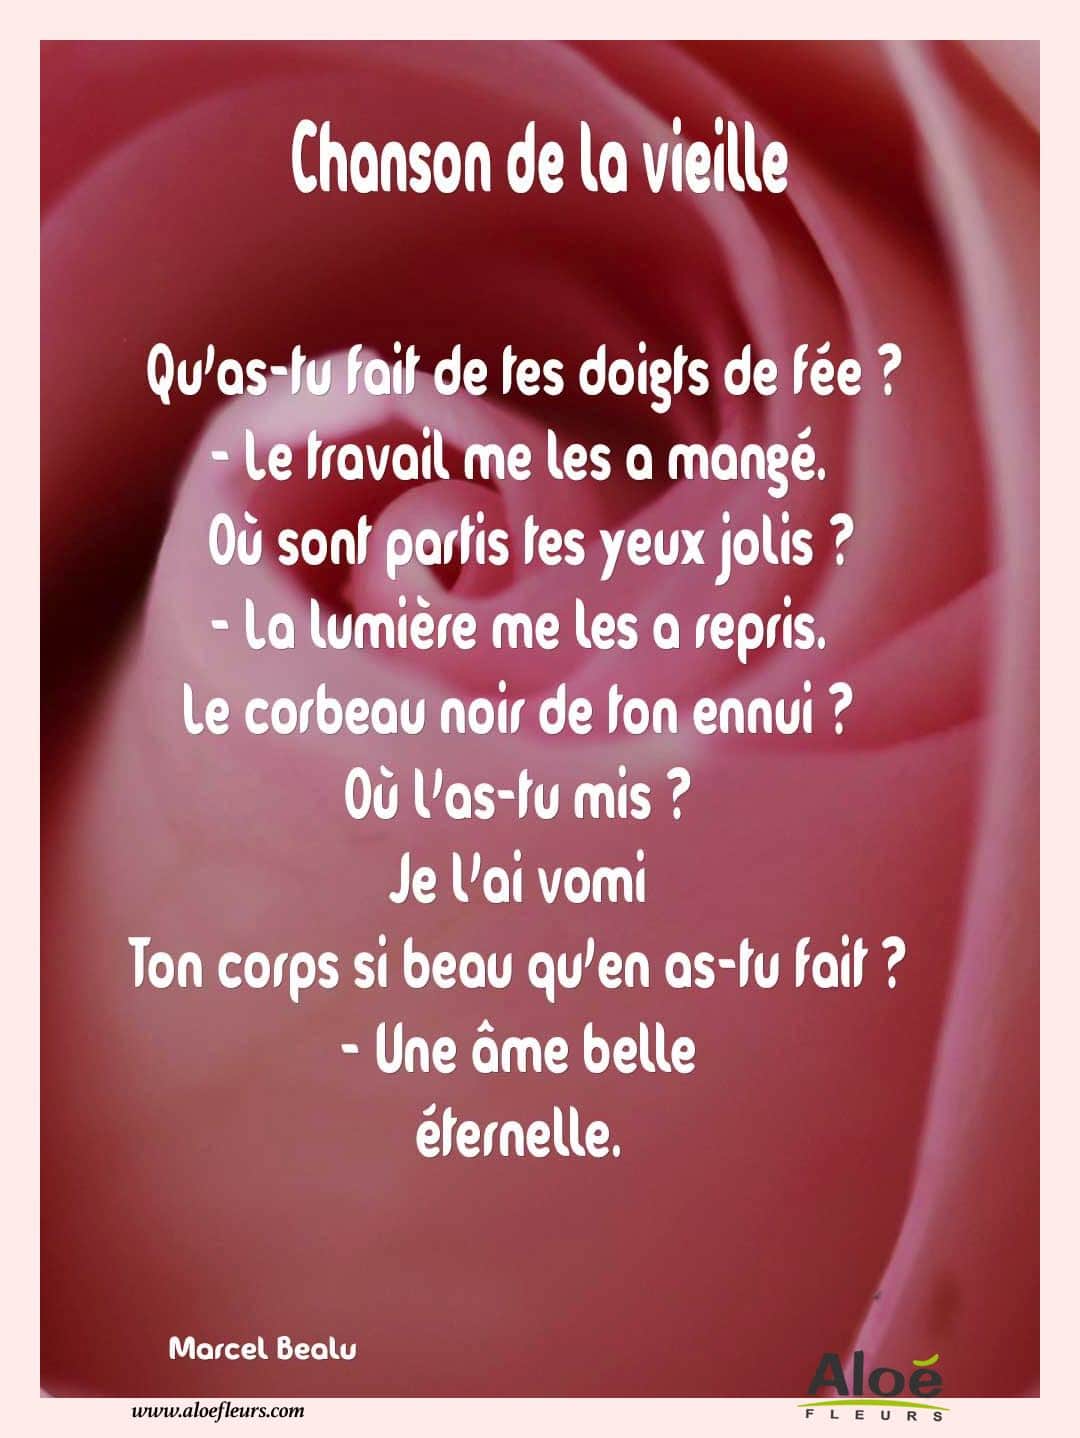 Poemes Fete Des Grands Meres 2016 Aloefleurs.com   Chanson De La Vieille